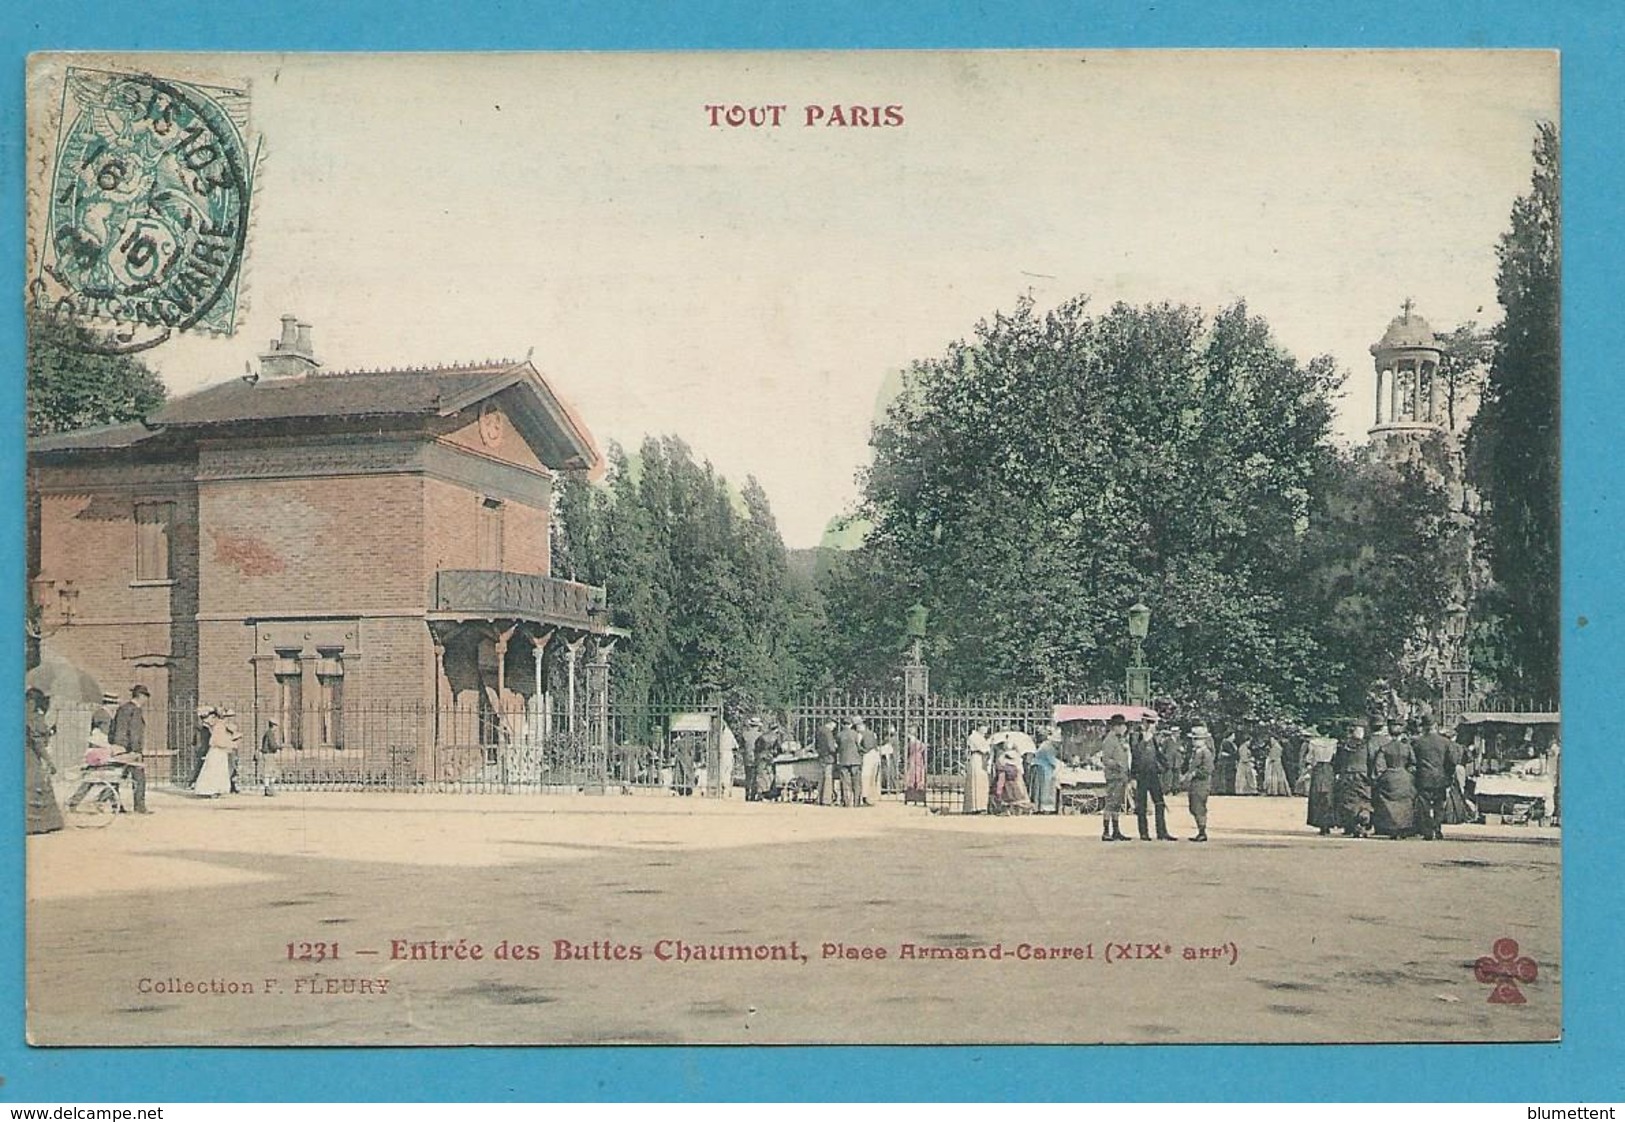 CPA 1231 TOUT PARIS - Entrée Des Buttes-Chaumon Place Armand-Carrel (XIXè Arrt)  Ed.FLEURY - District 19